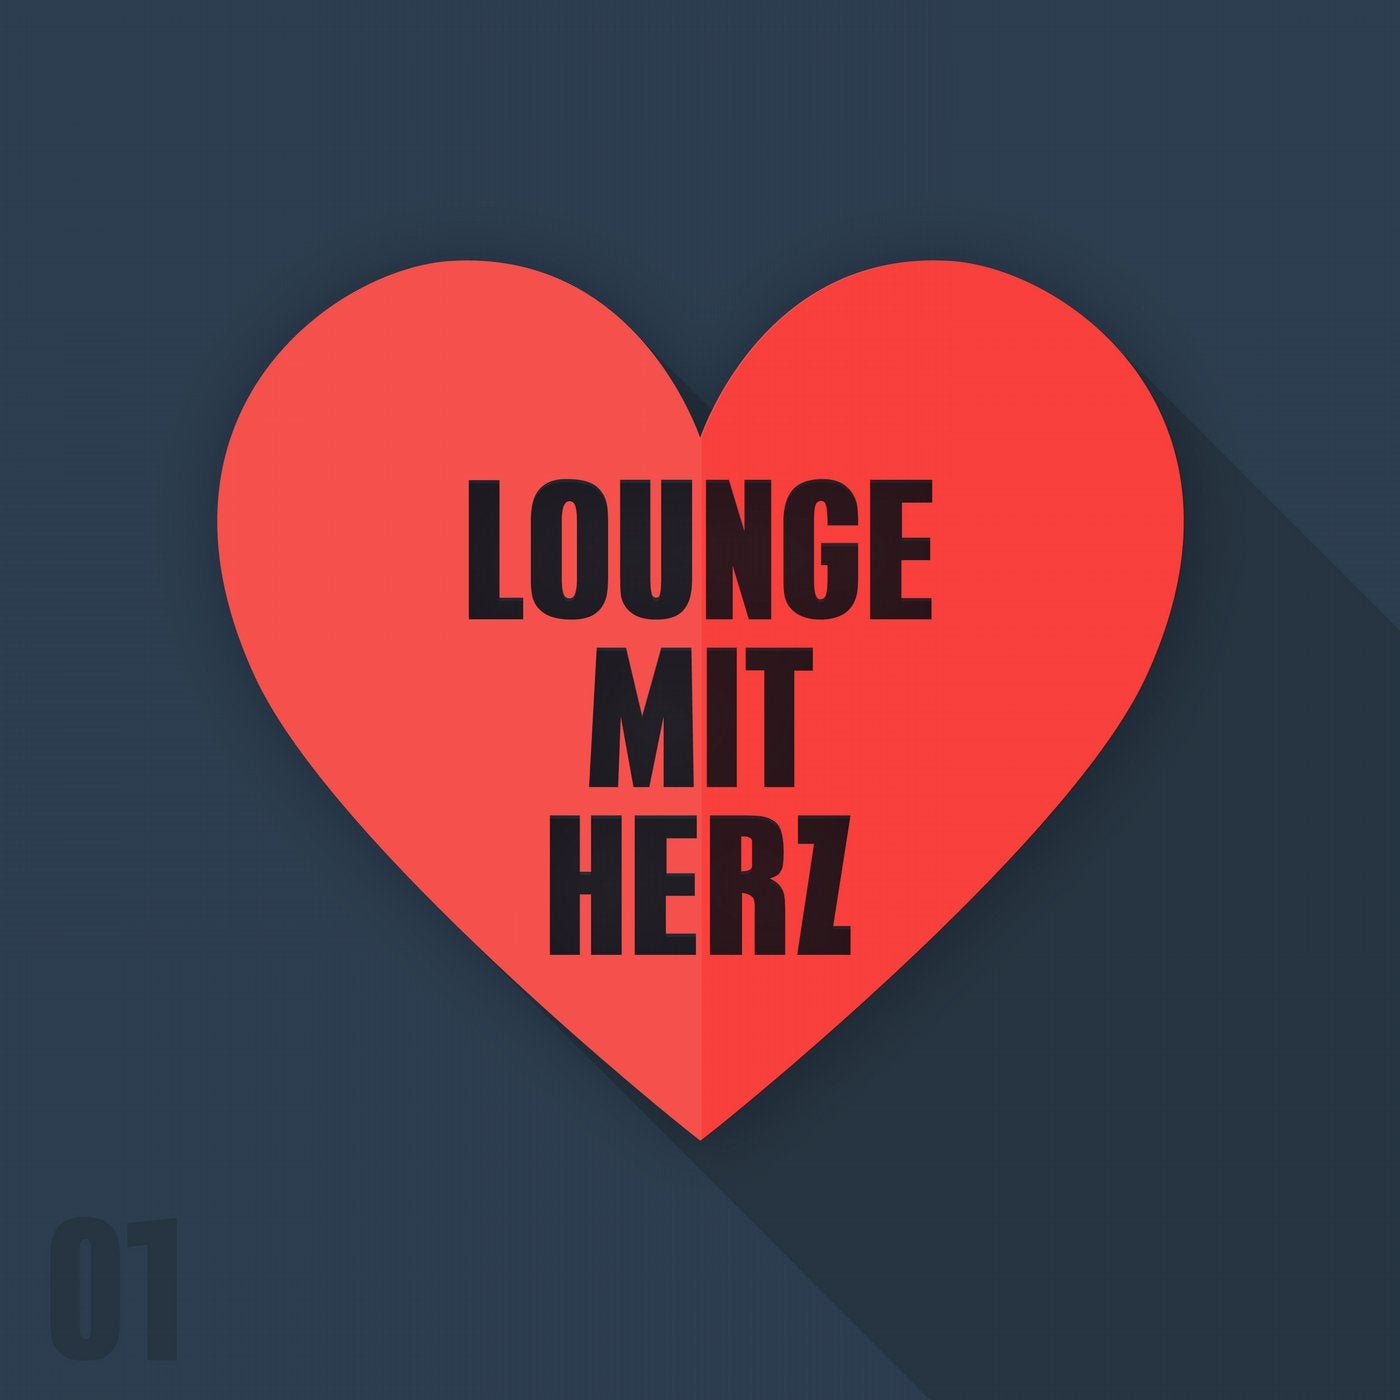 Lounge mit Herz, Vol. 1